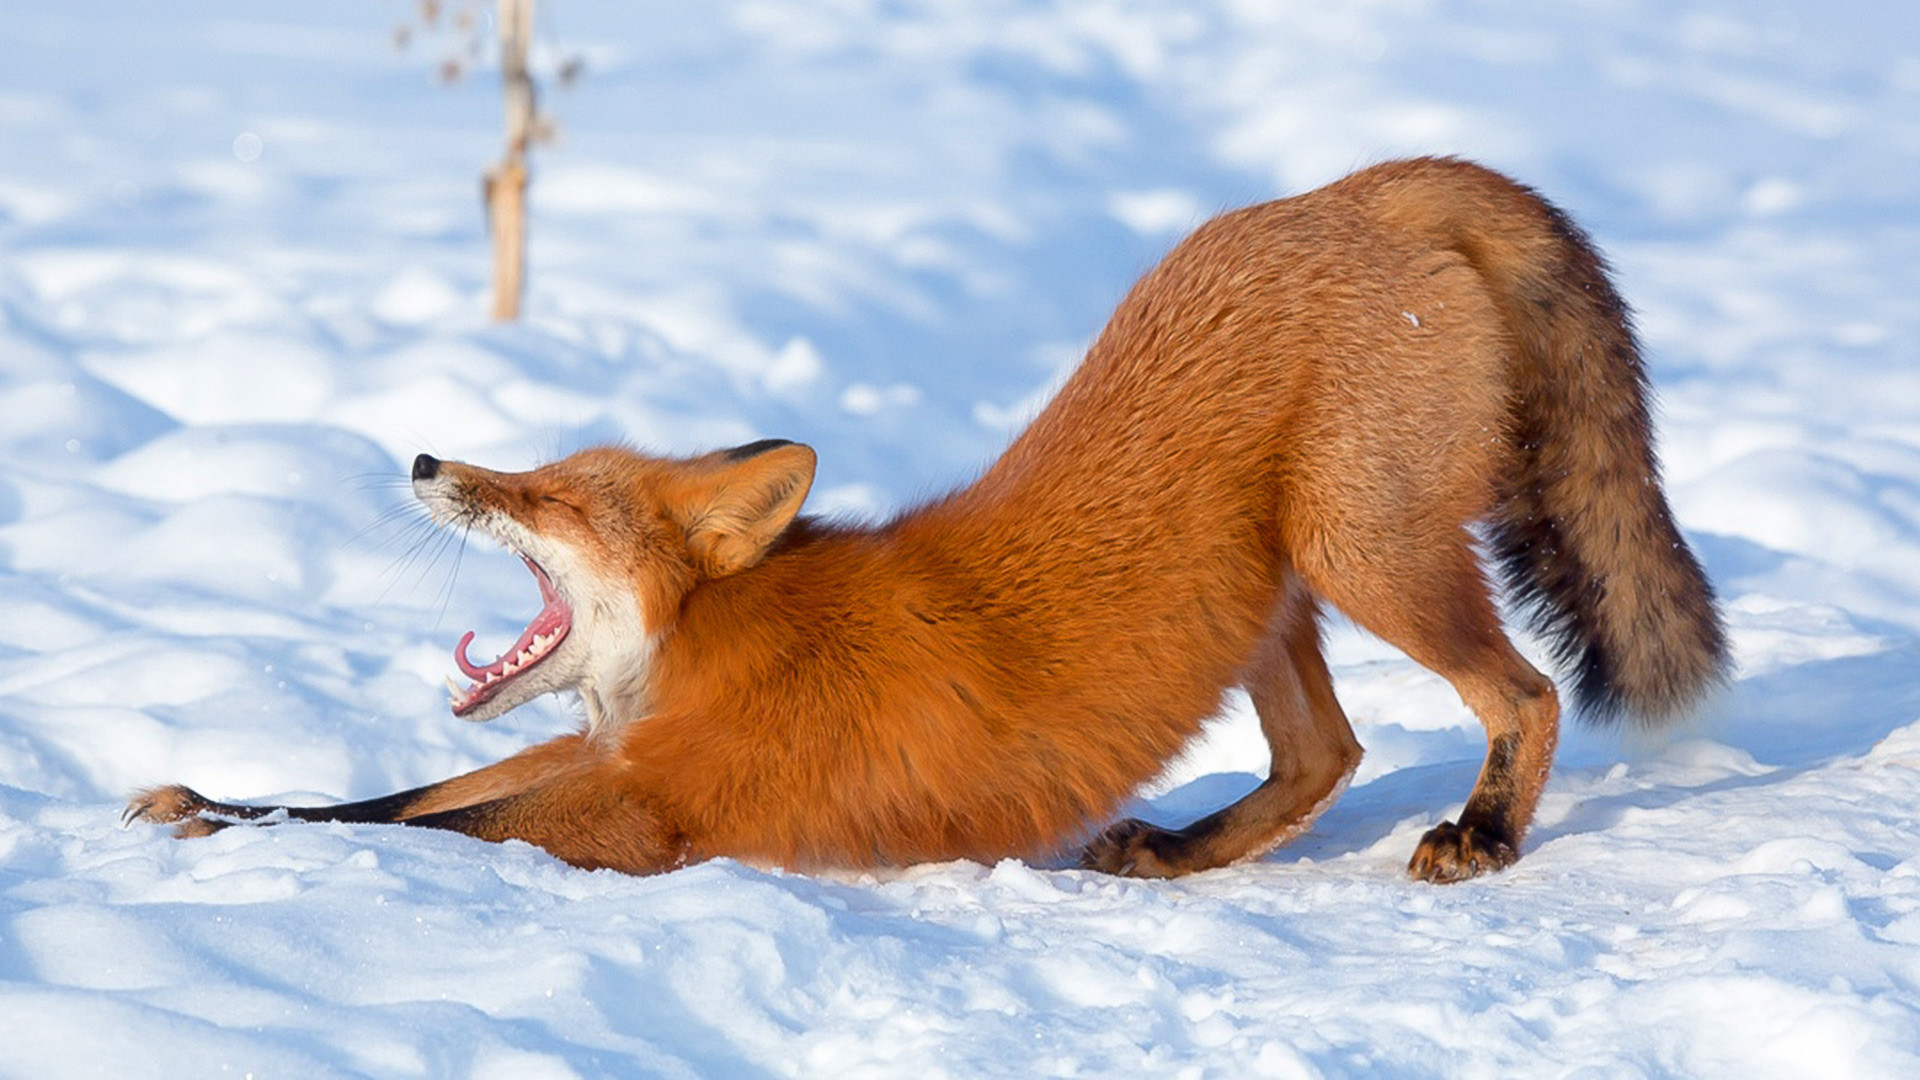 Aviez-vous déjà surpris un renard en train de bâiller?